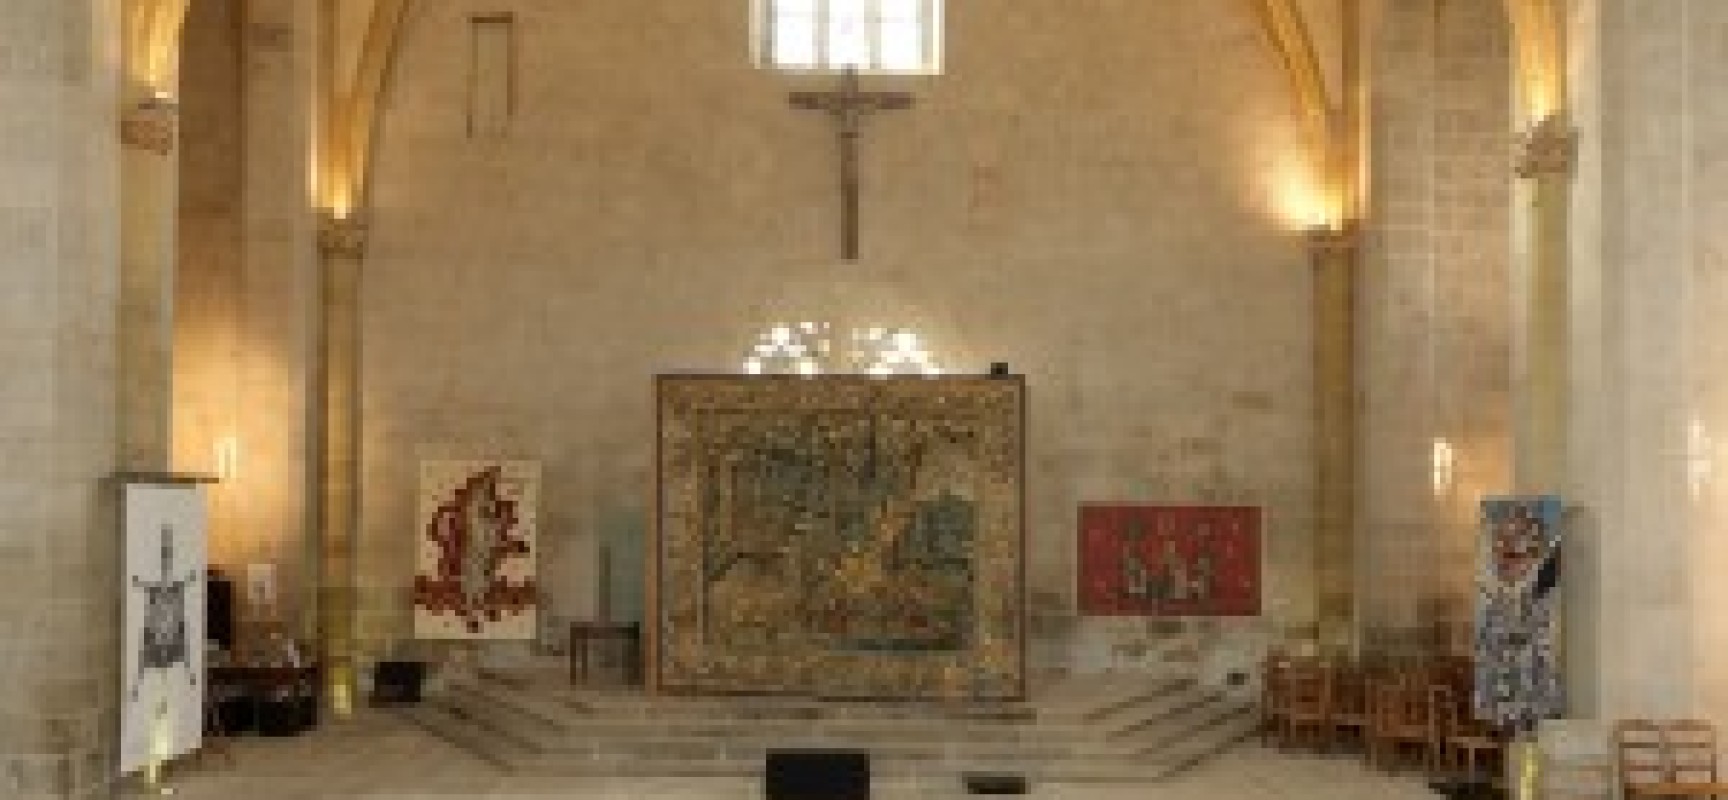 Exposition de tapisseries de l’église du château de felletin